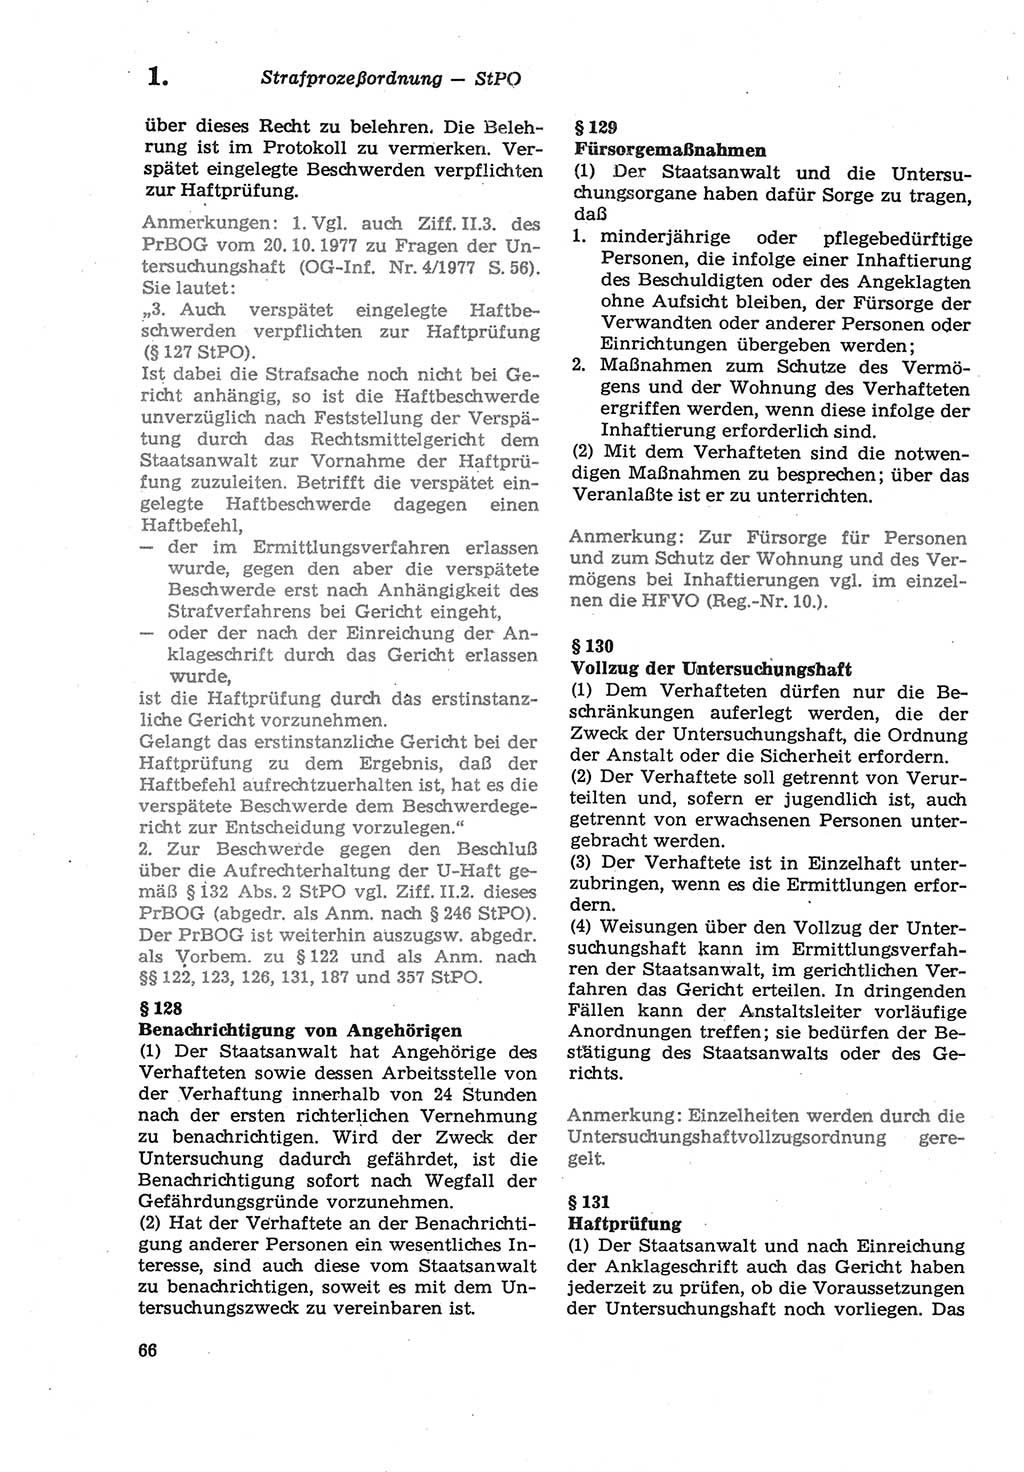 Strafprozeßordnung (StPO) der Deutschen Demokratischen Republik (DDR) sowie angrenzende Gesetze und Bestimmungen 1979, Seite 66 (StPO DDR Ges. Best. 1979, S. 66)